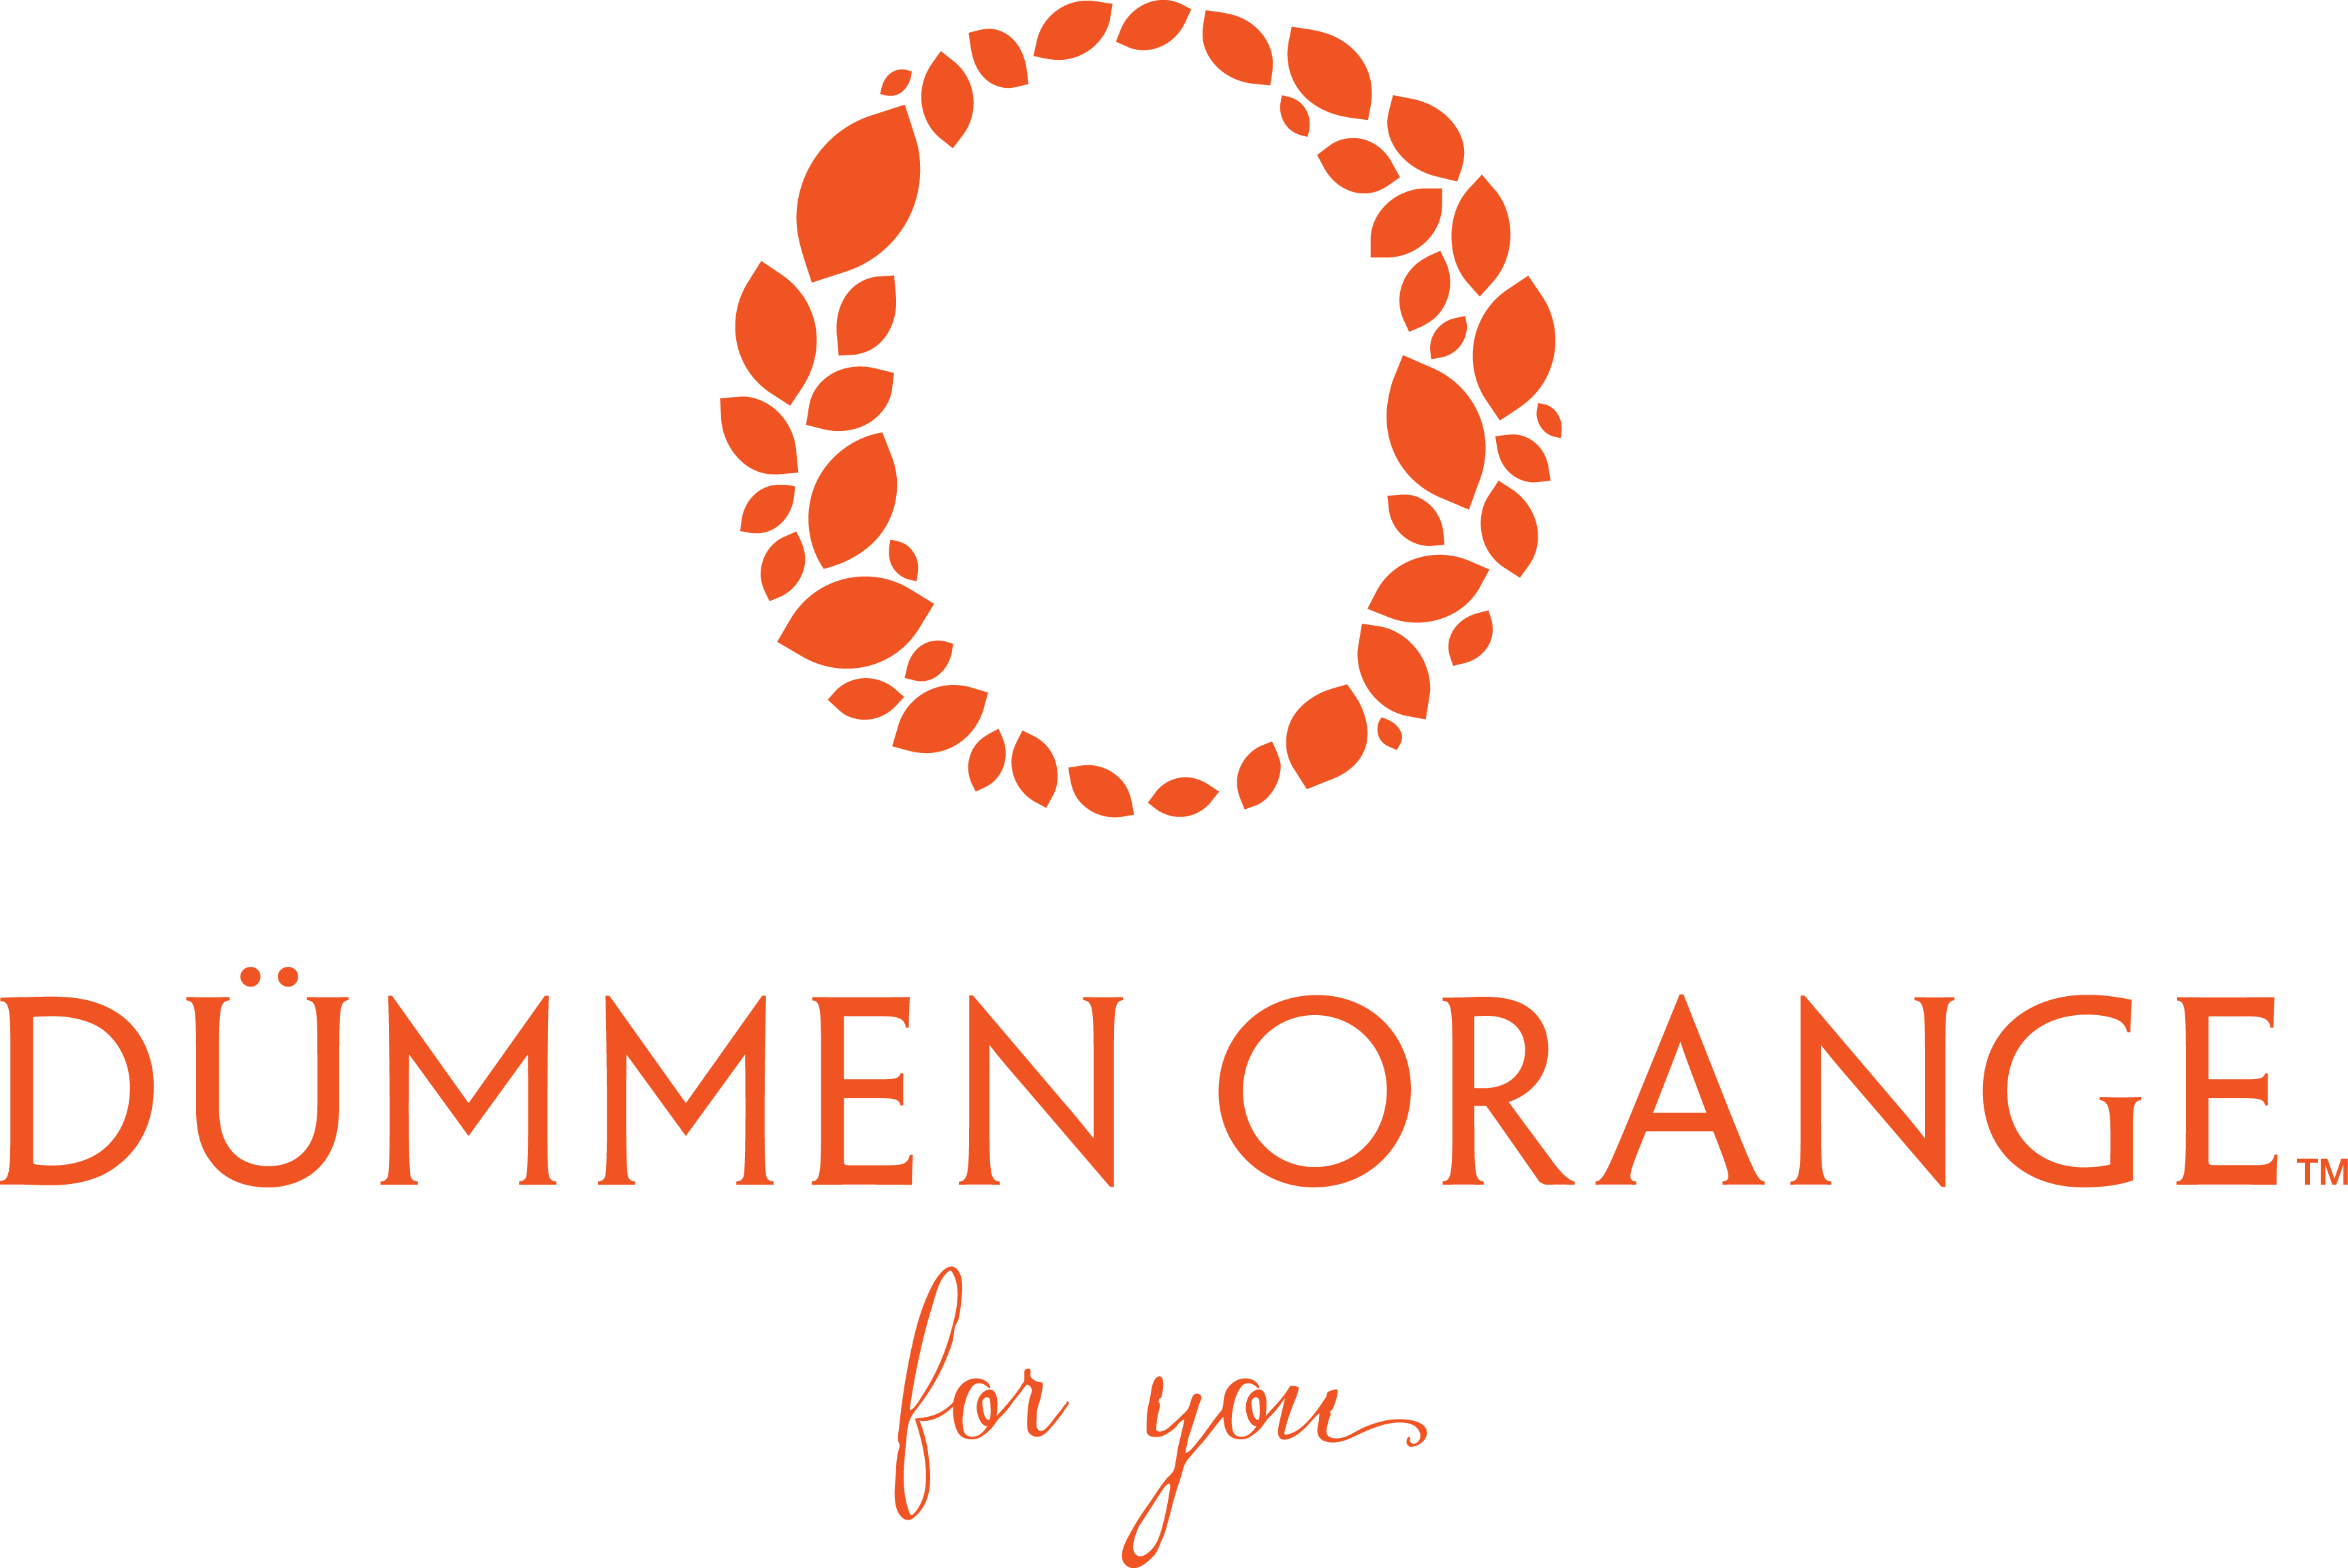 Dunmmen Orange